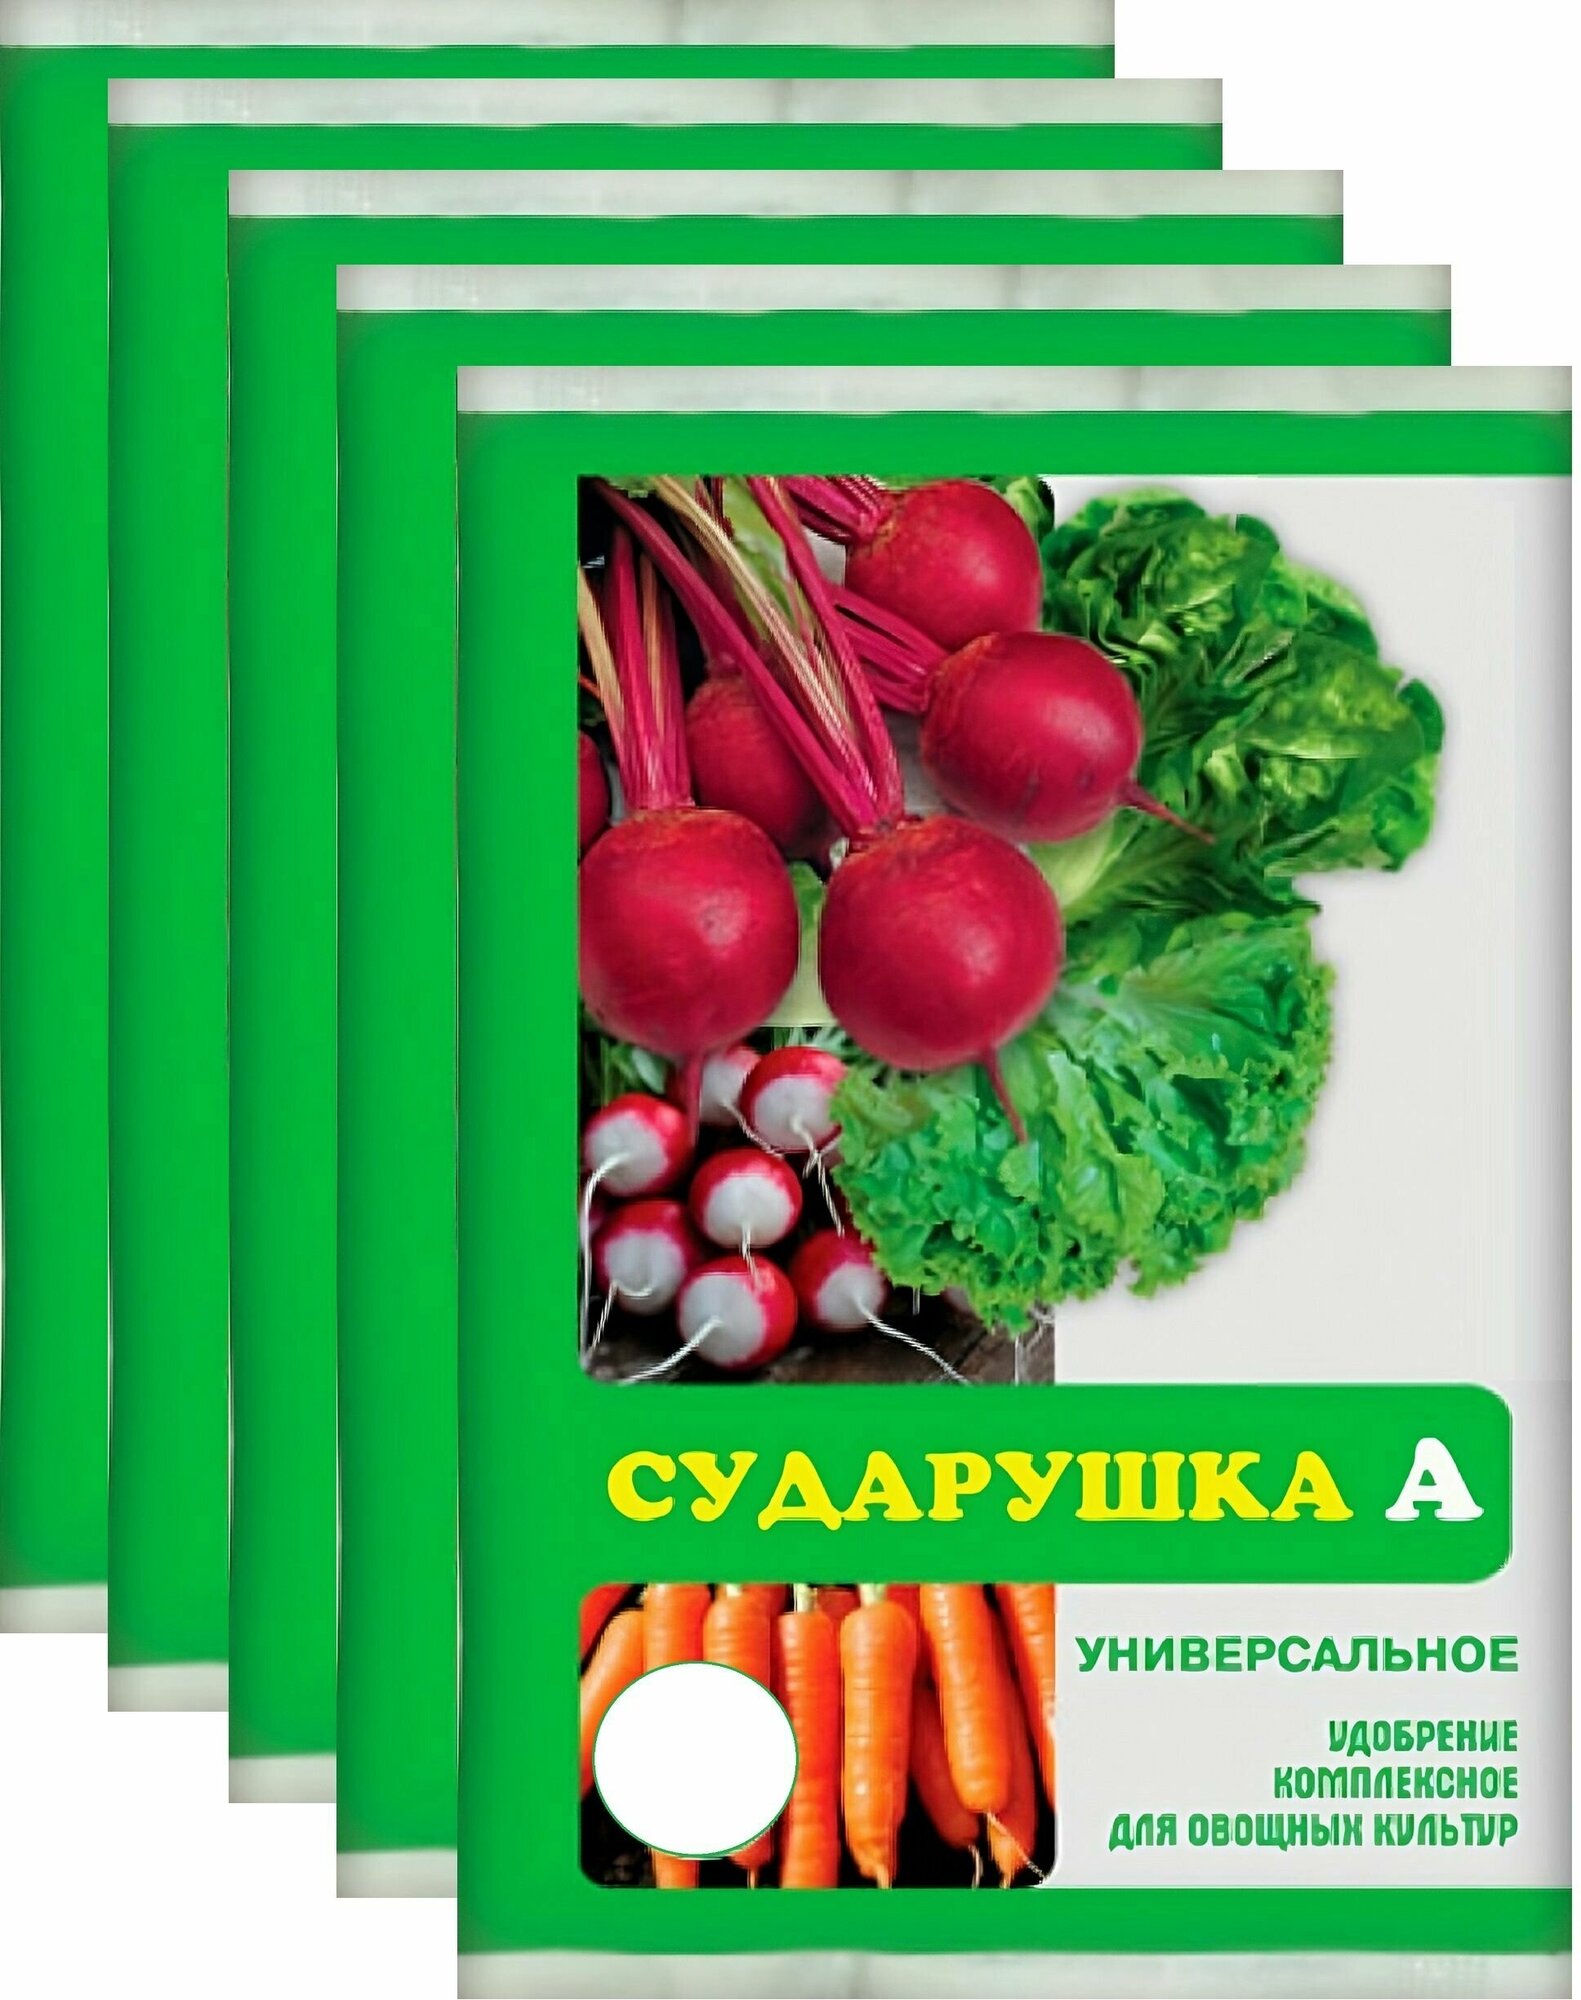 Удобрение универсальное "Сударушка", 5 шт по 60 г. Подкормка для моркови, картофеля, свеклы и других овощных культур, стимулирует рост корнеплодов